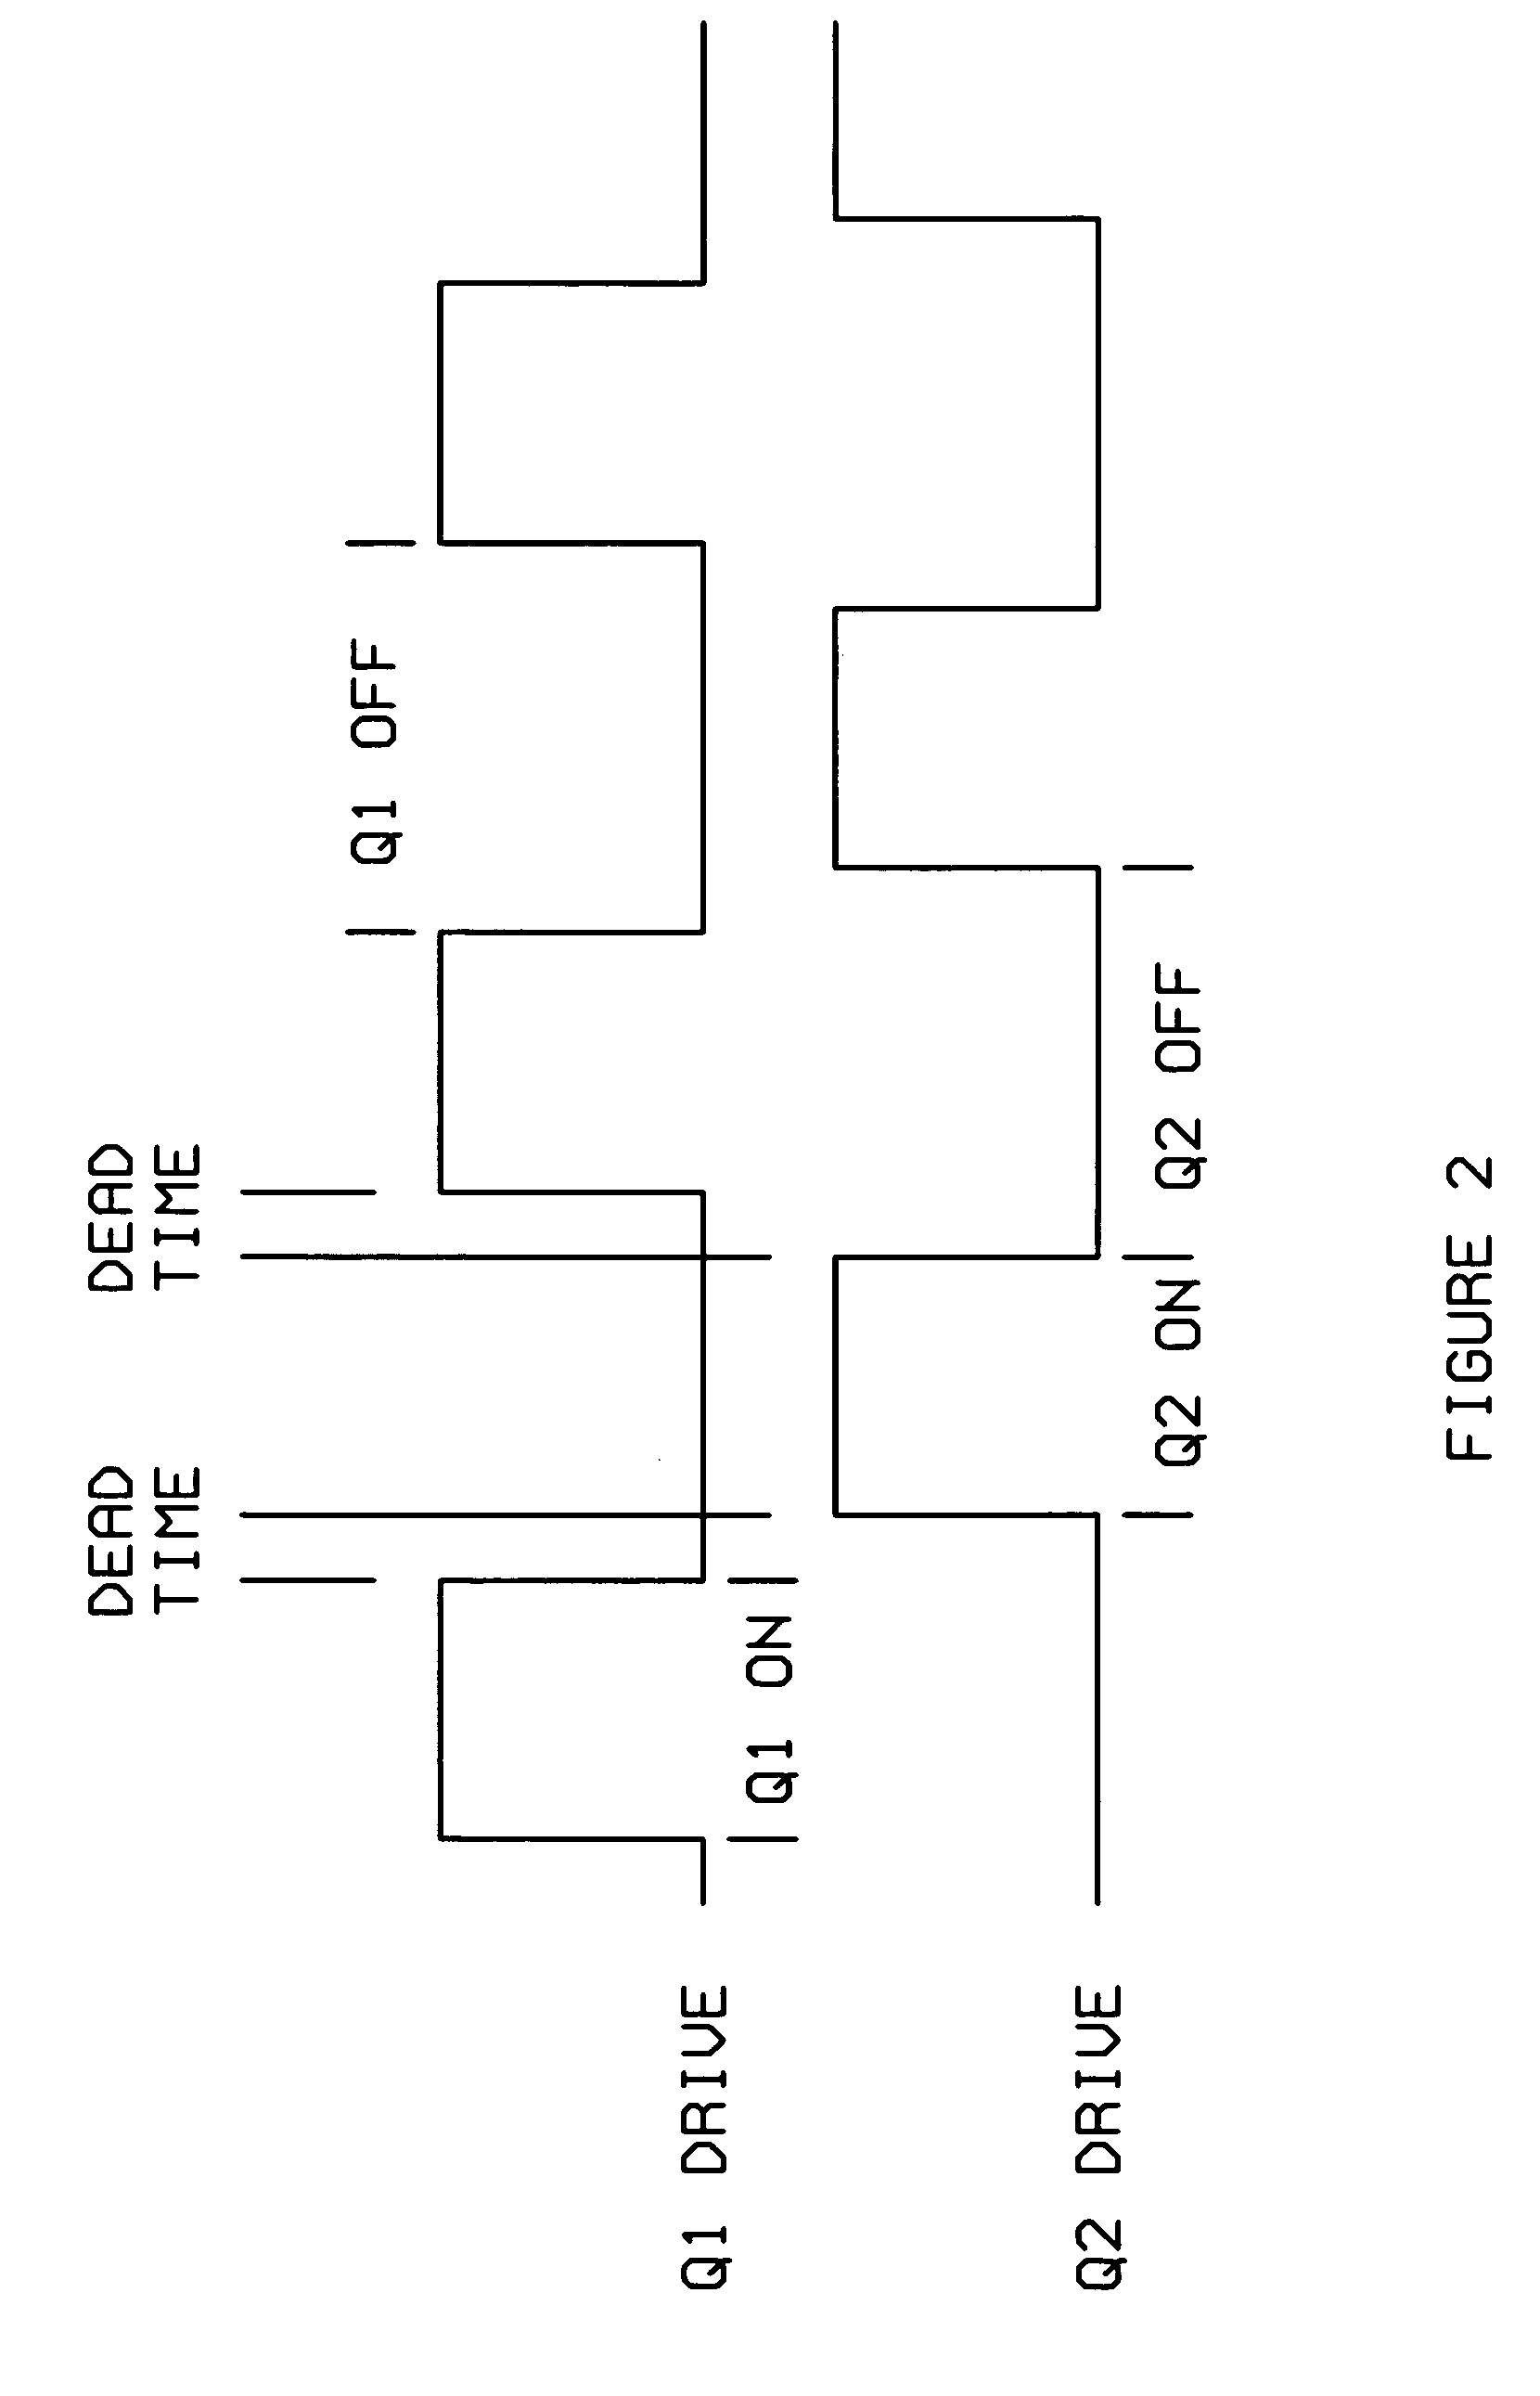 Phase to amplitude H-Bridge switching circuit